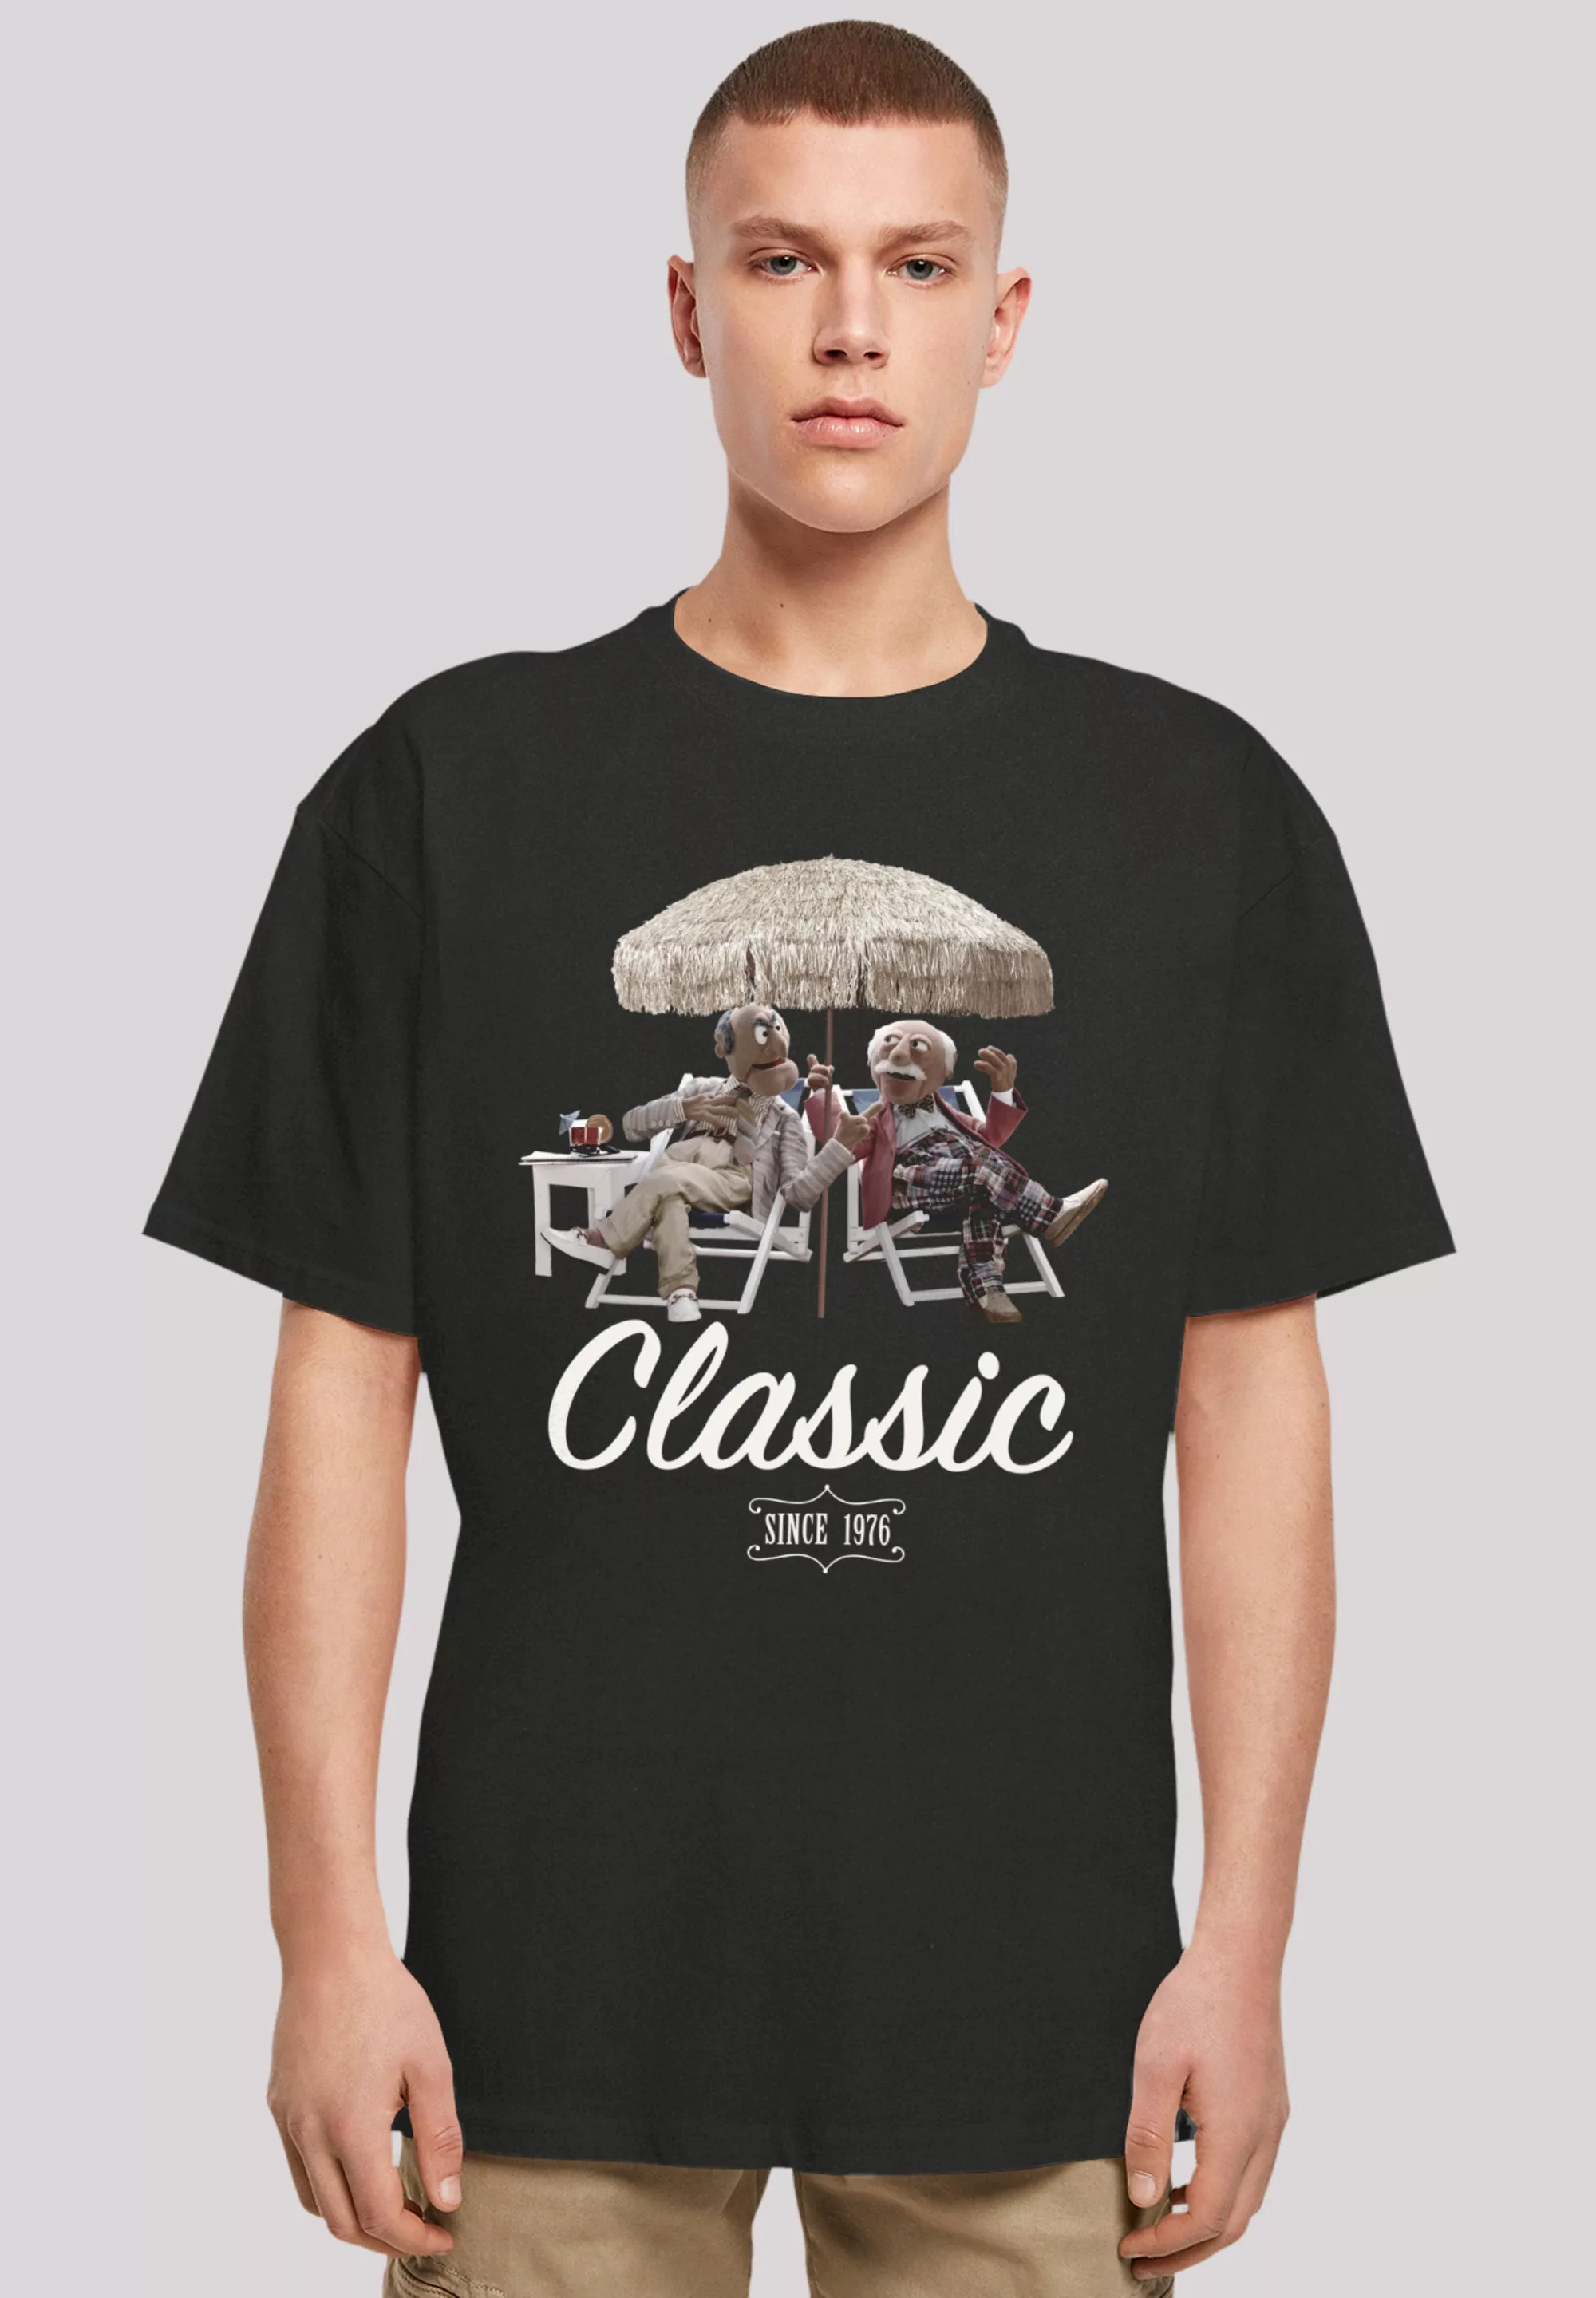 F4NT4STIC T-Shirt "Disney Muppets Waldorf&Statler Classic", Premium Qualitä günstig online kaufen